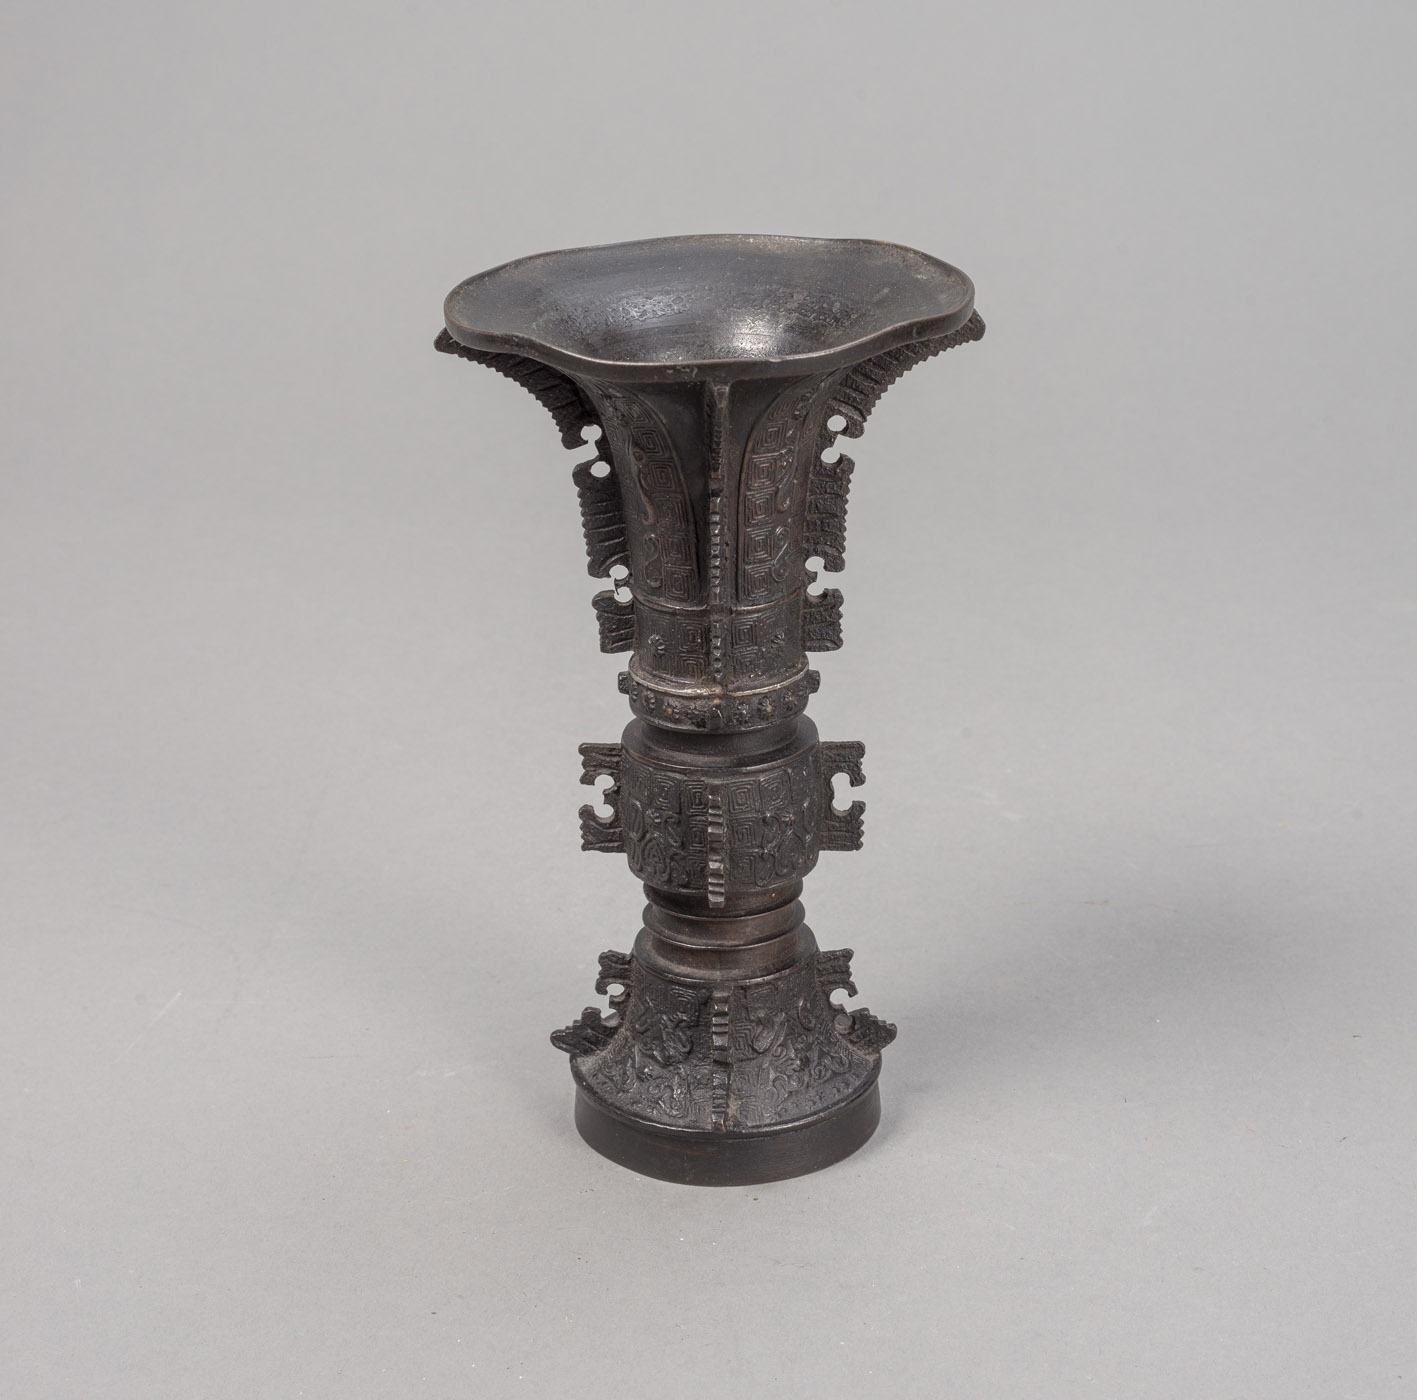 <b>'Gu'-Förmige Vase aus Bronze mit archaistischem Dekor</b>